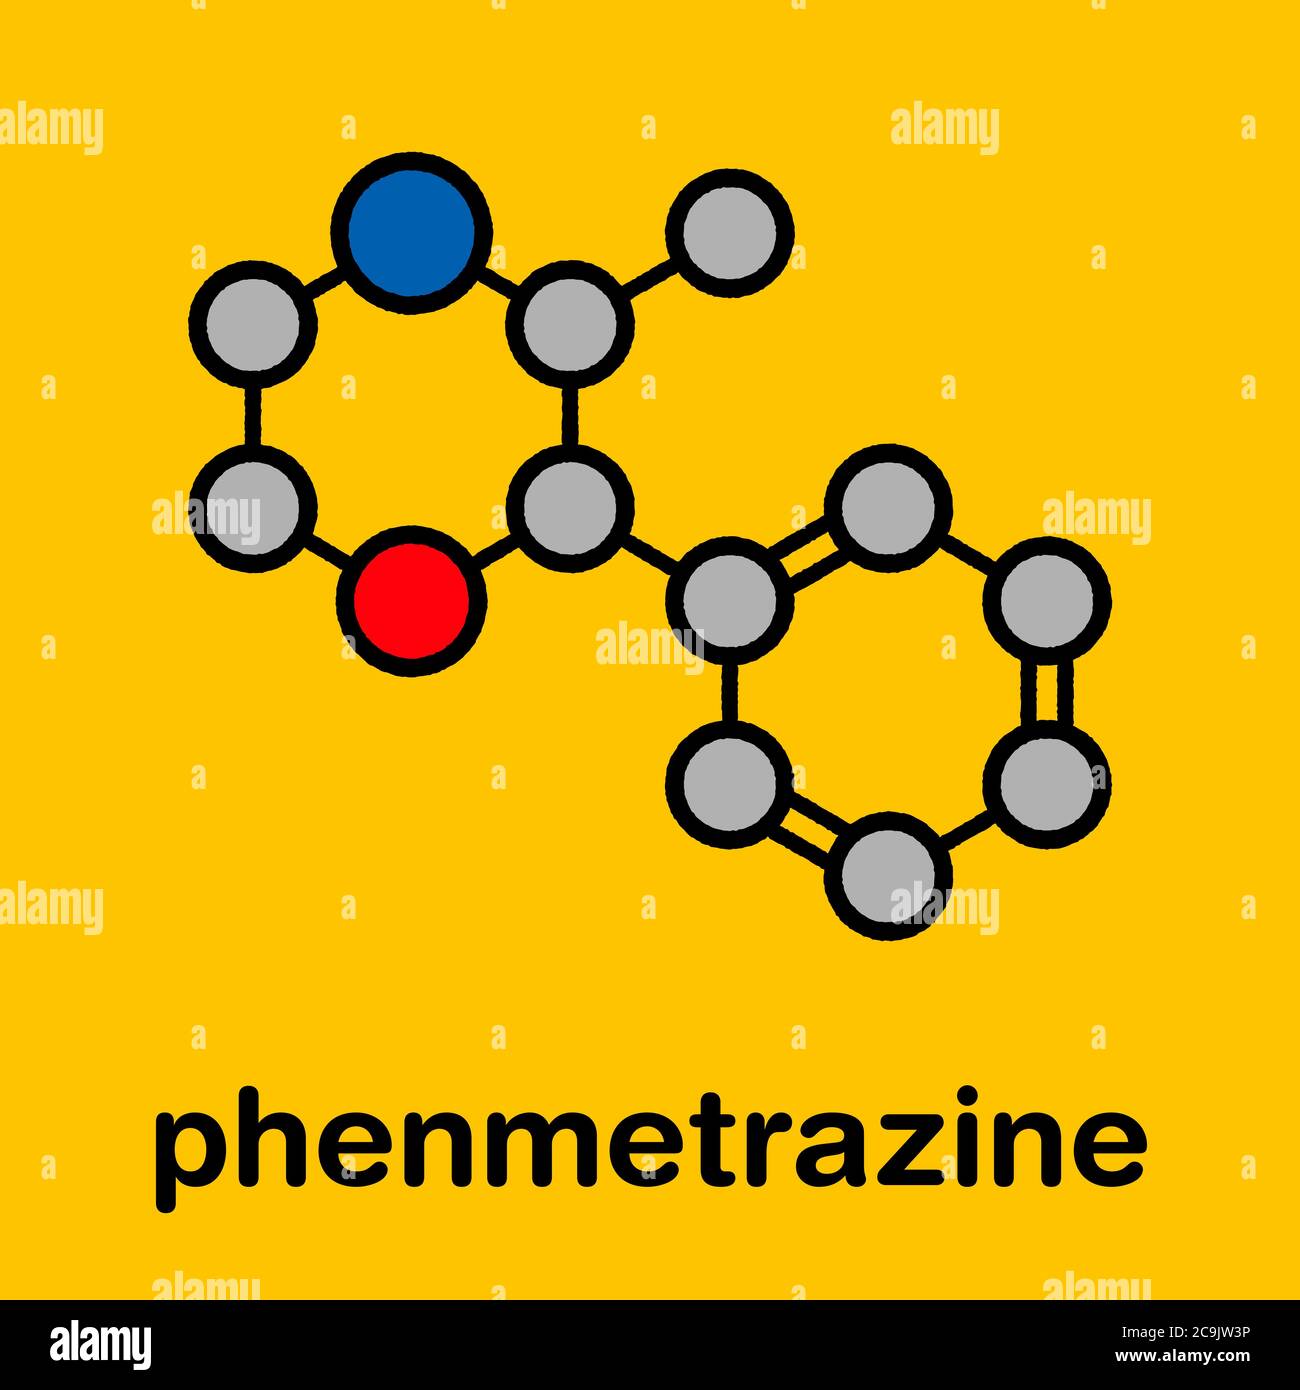 Phenmetrazine stimulant drug molecule (amphetamine class). Used as stimulant and appetite suppressant. Stylized skeletal formula (chemical structure). Stock Photo